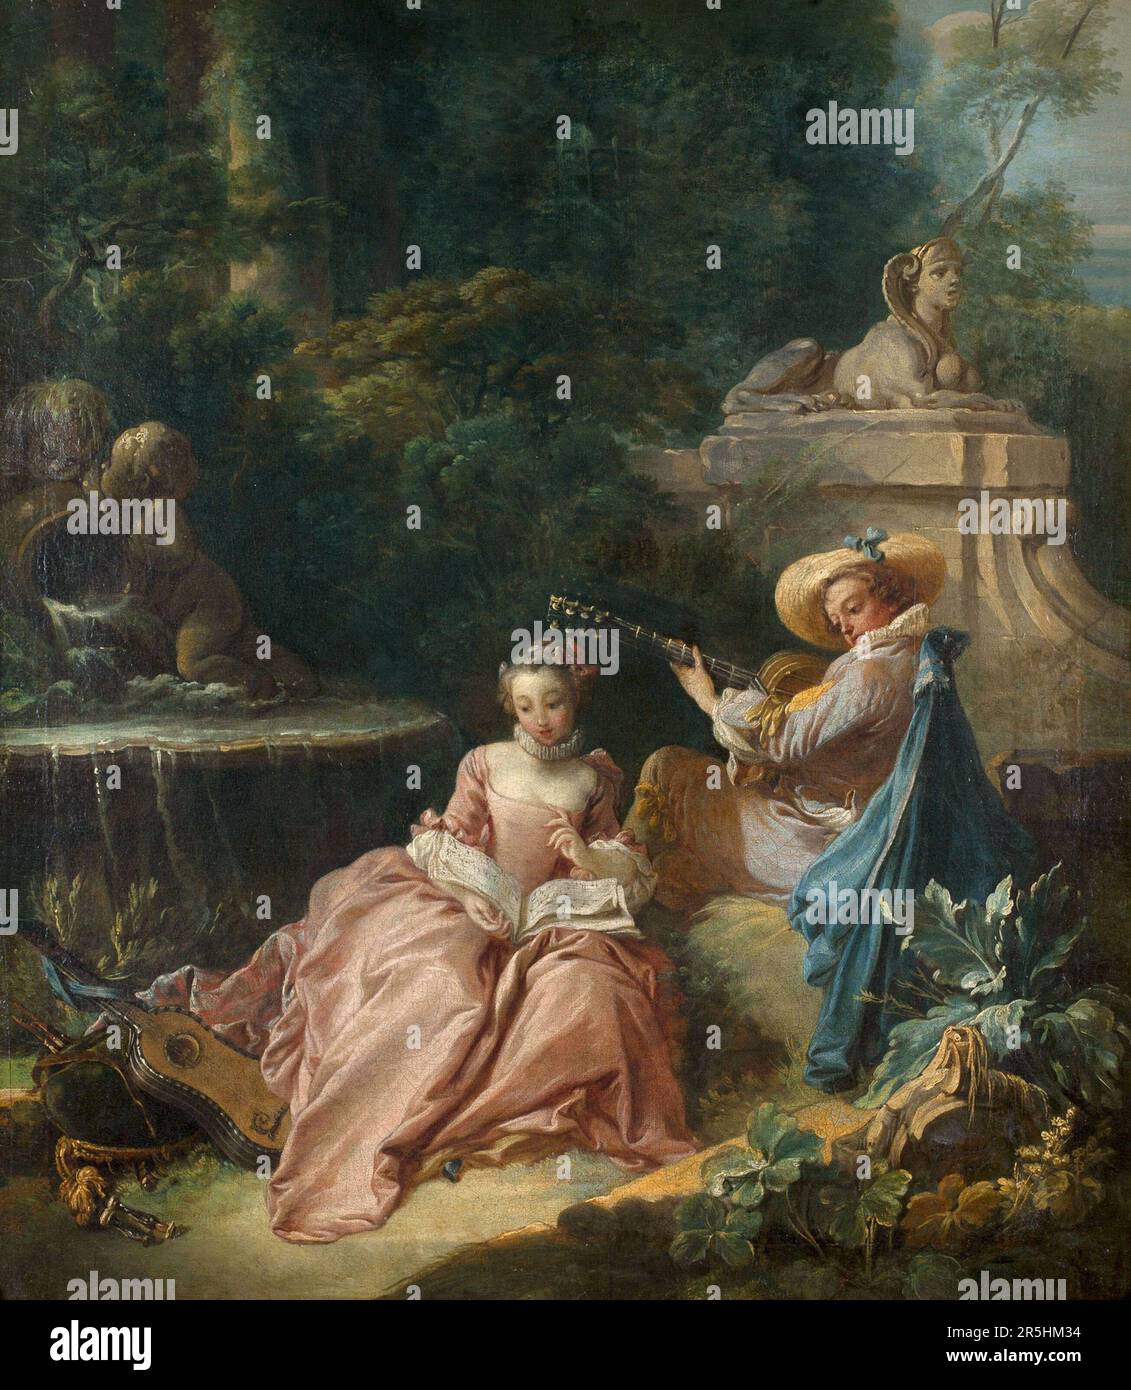 La Ledon de Musique, gemalt von Francois Bouchard. Obwohl heute kaum bekannt, war Francois Boucher einer der berühmtesten Maler des 18. Jahrhunderts in Frankreich. Er malte klassische Themen im Barock- und Rokoko-Stil. Seine Schirmherrin war Madame de Pompadour, und sein Werk war so beliebt, dass er schließlich Premier Peintre du ROI (erster Maler des Königs) wurde, ein angesehener Gerichtsstand im Antiker-Regime. Stockfoto